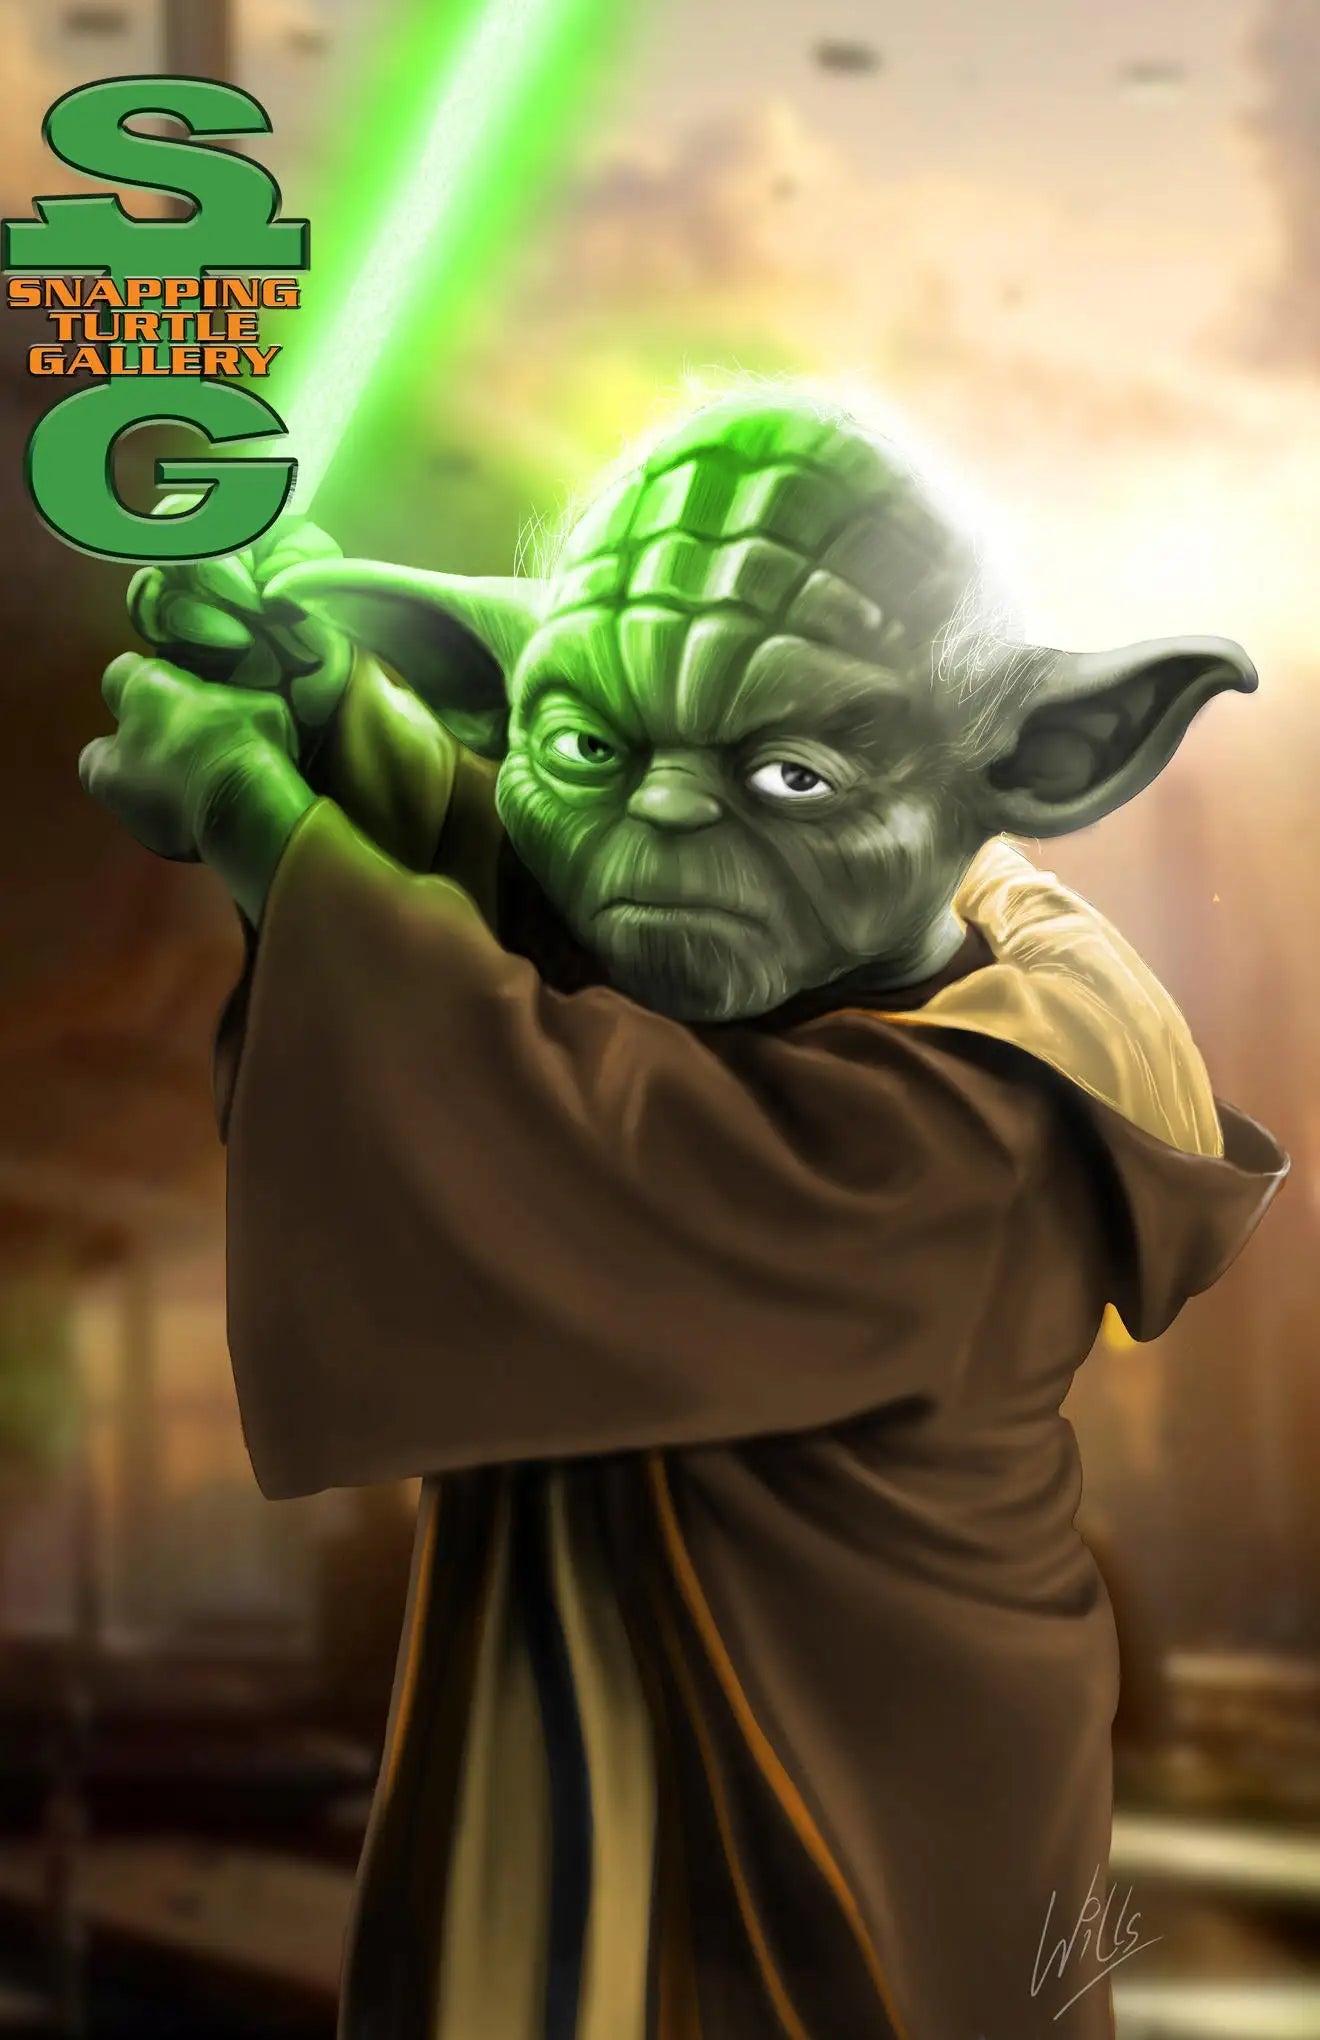 Jedi Master Yoda - Star Wars